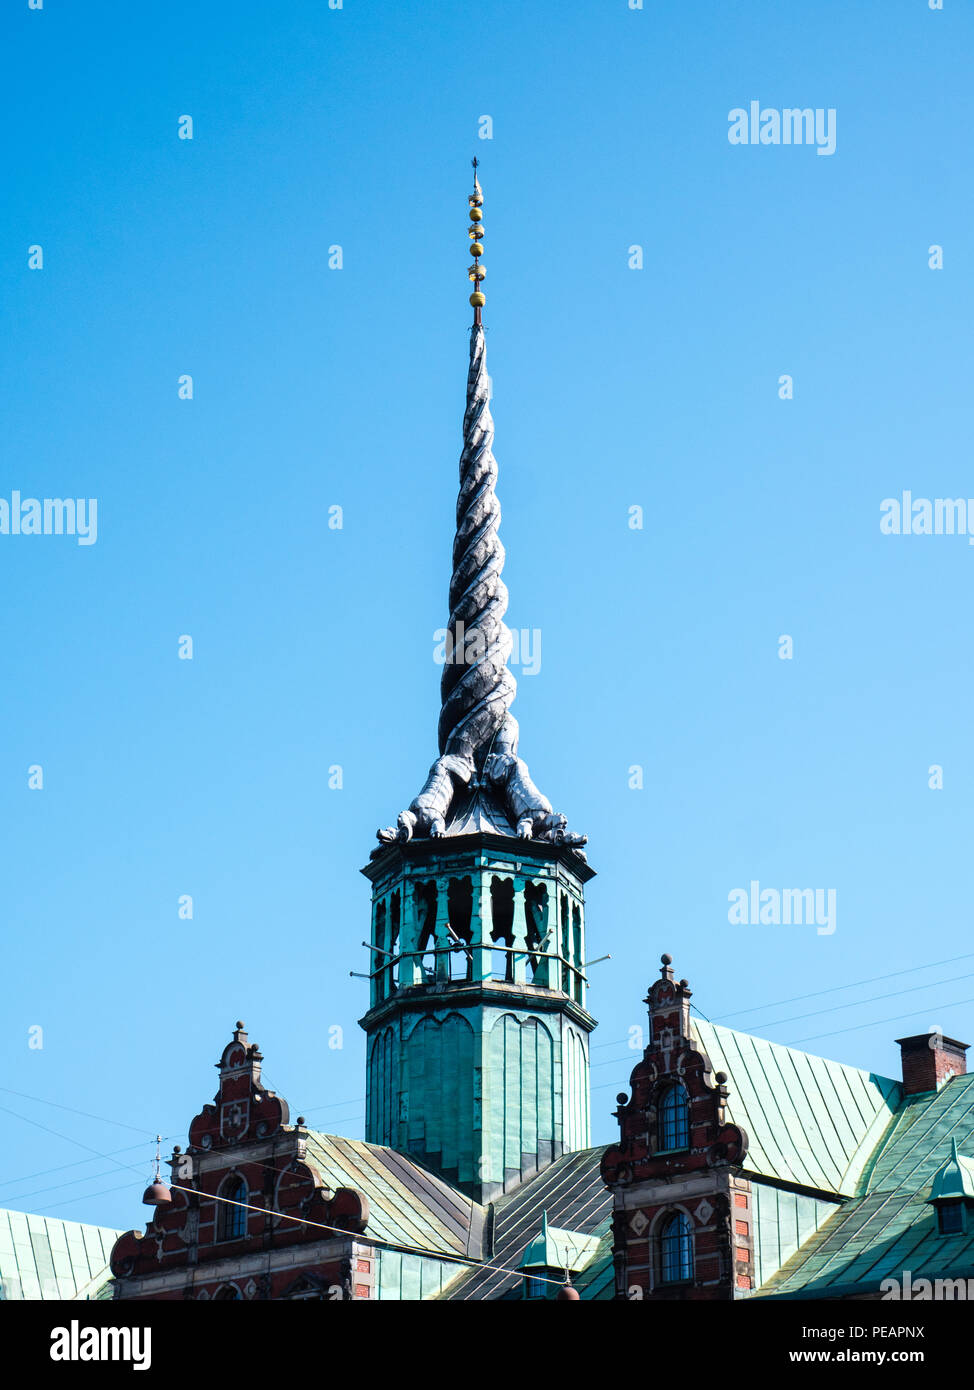 Børsen, The Old Stock Exchange, Slotsholmen, Copenhagen, Zealand, Denmark, Europe. Stock Photo